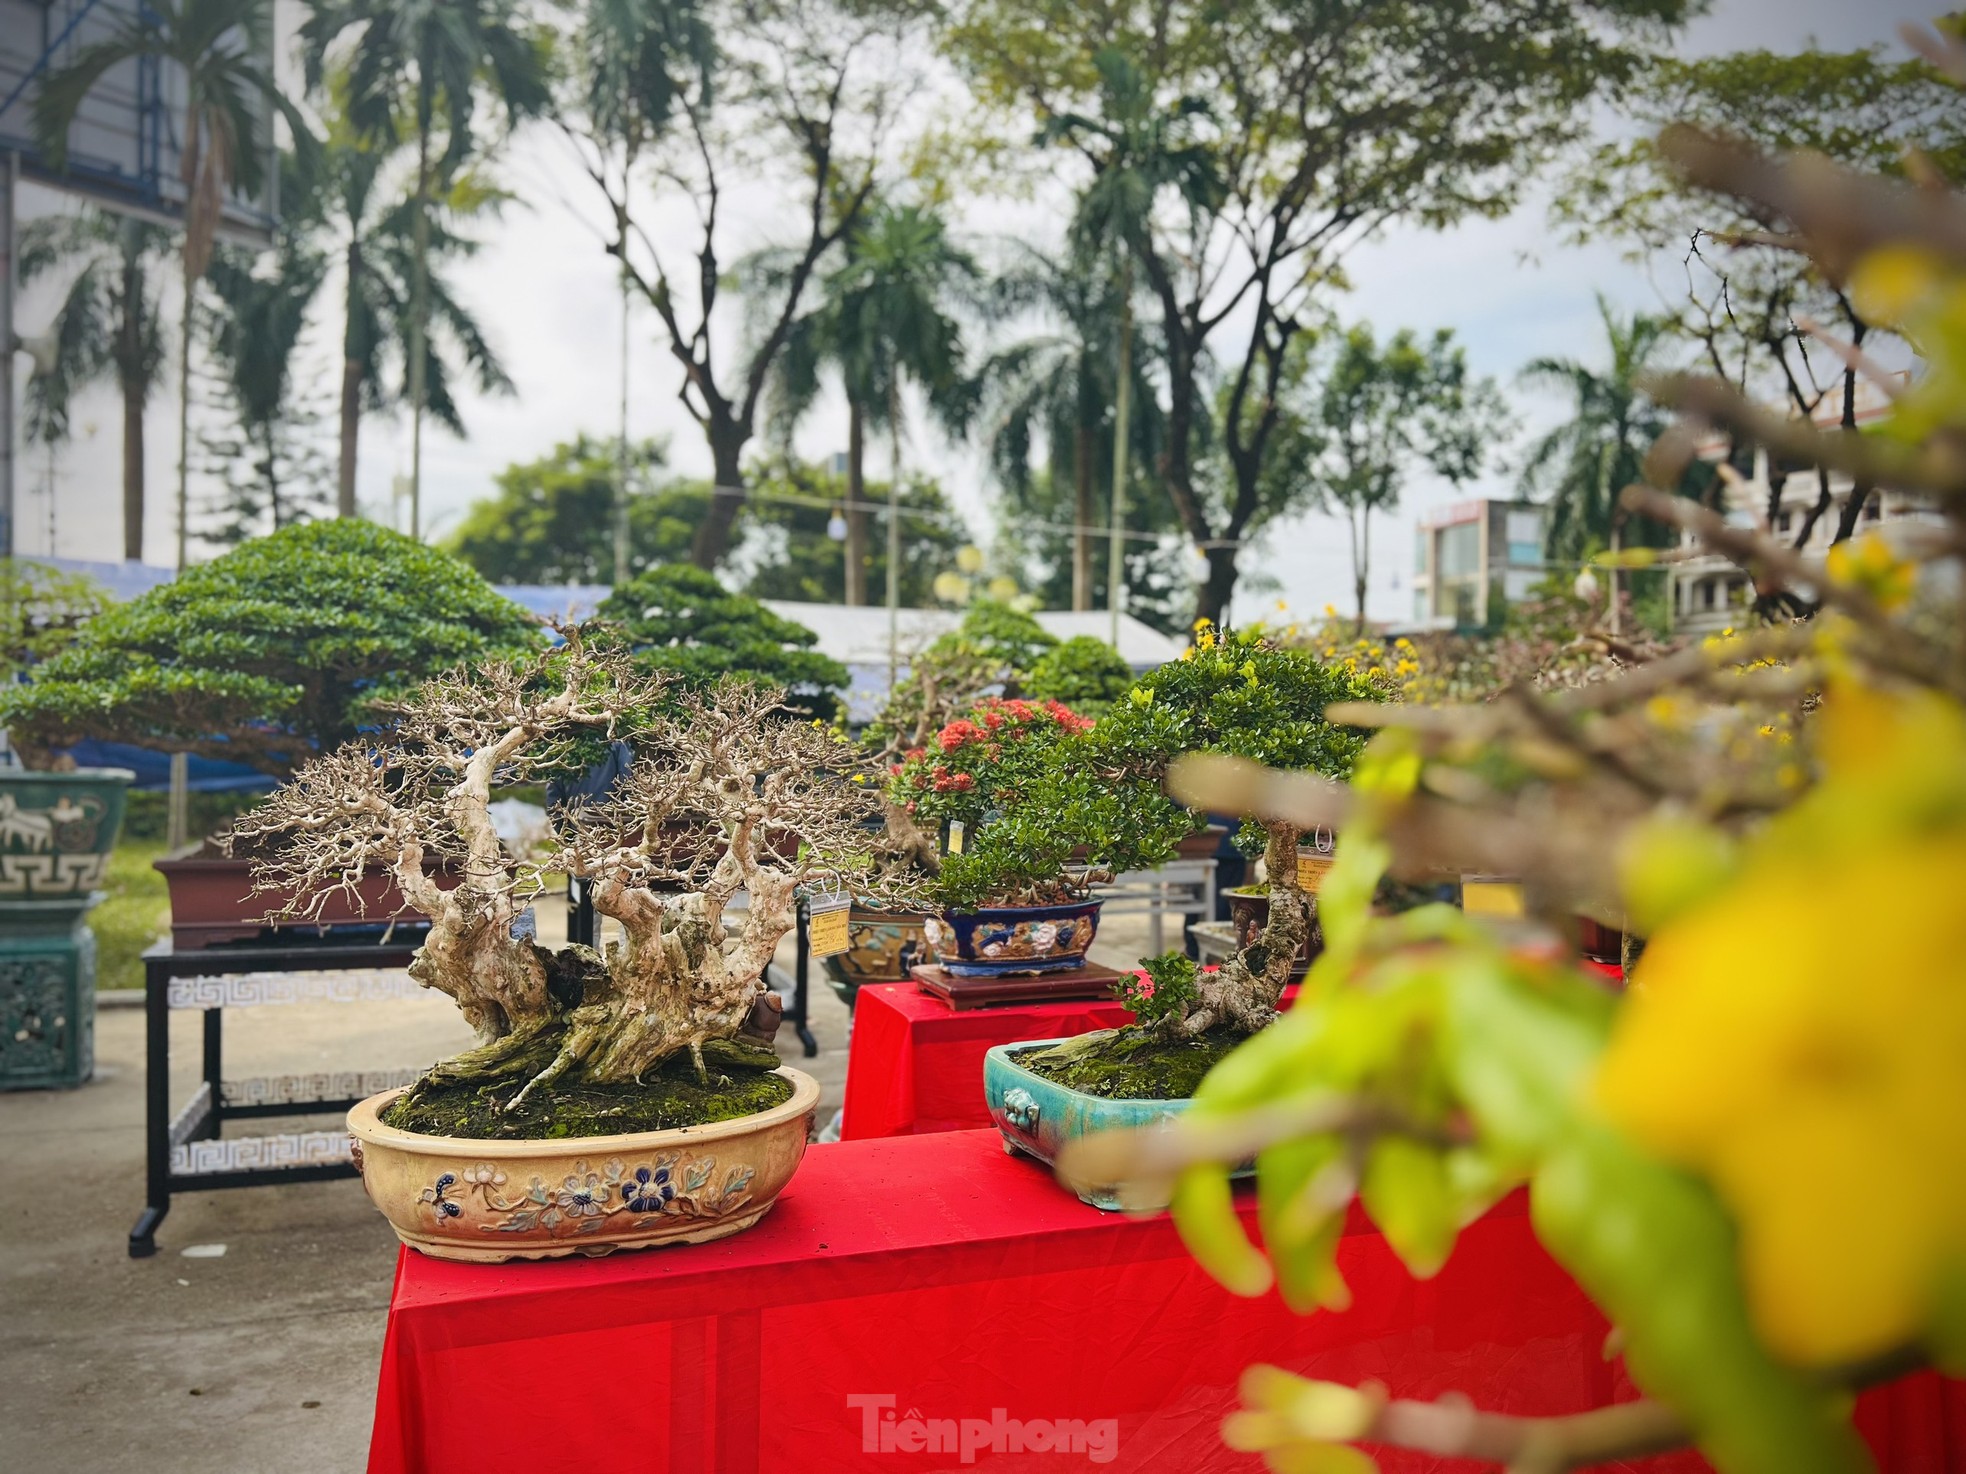 Dàn bonsai độc lạ, giá lên đến 500 triệu đồng ở Quảng Ngãi - Ảnh 31.